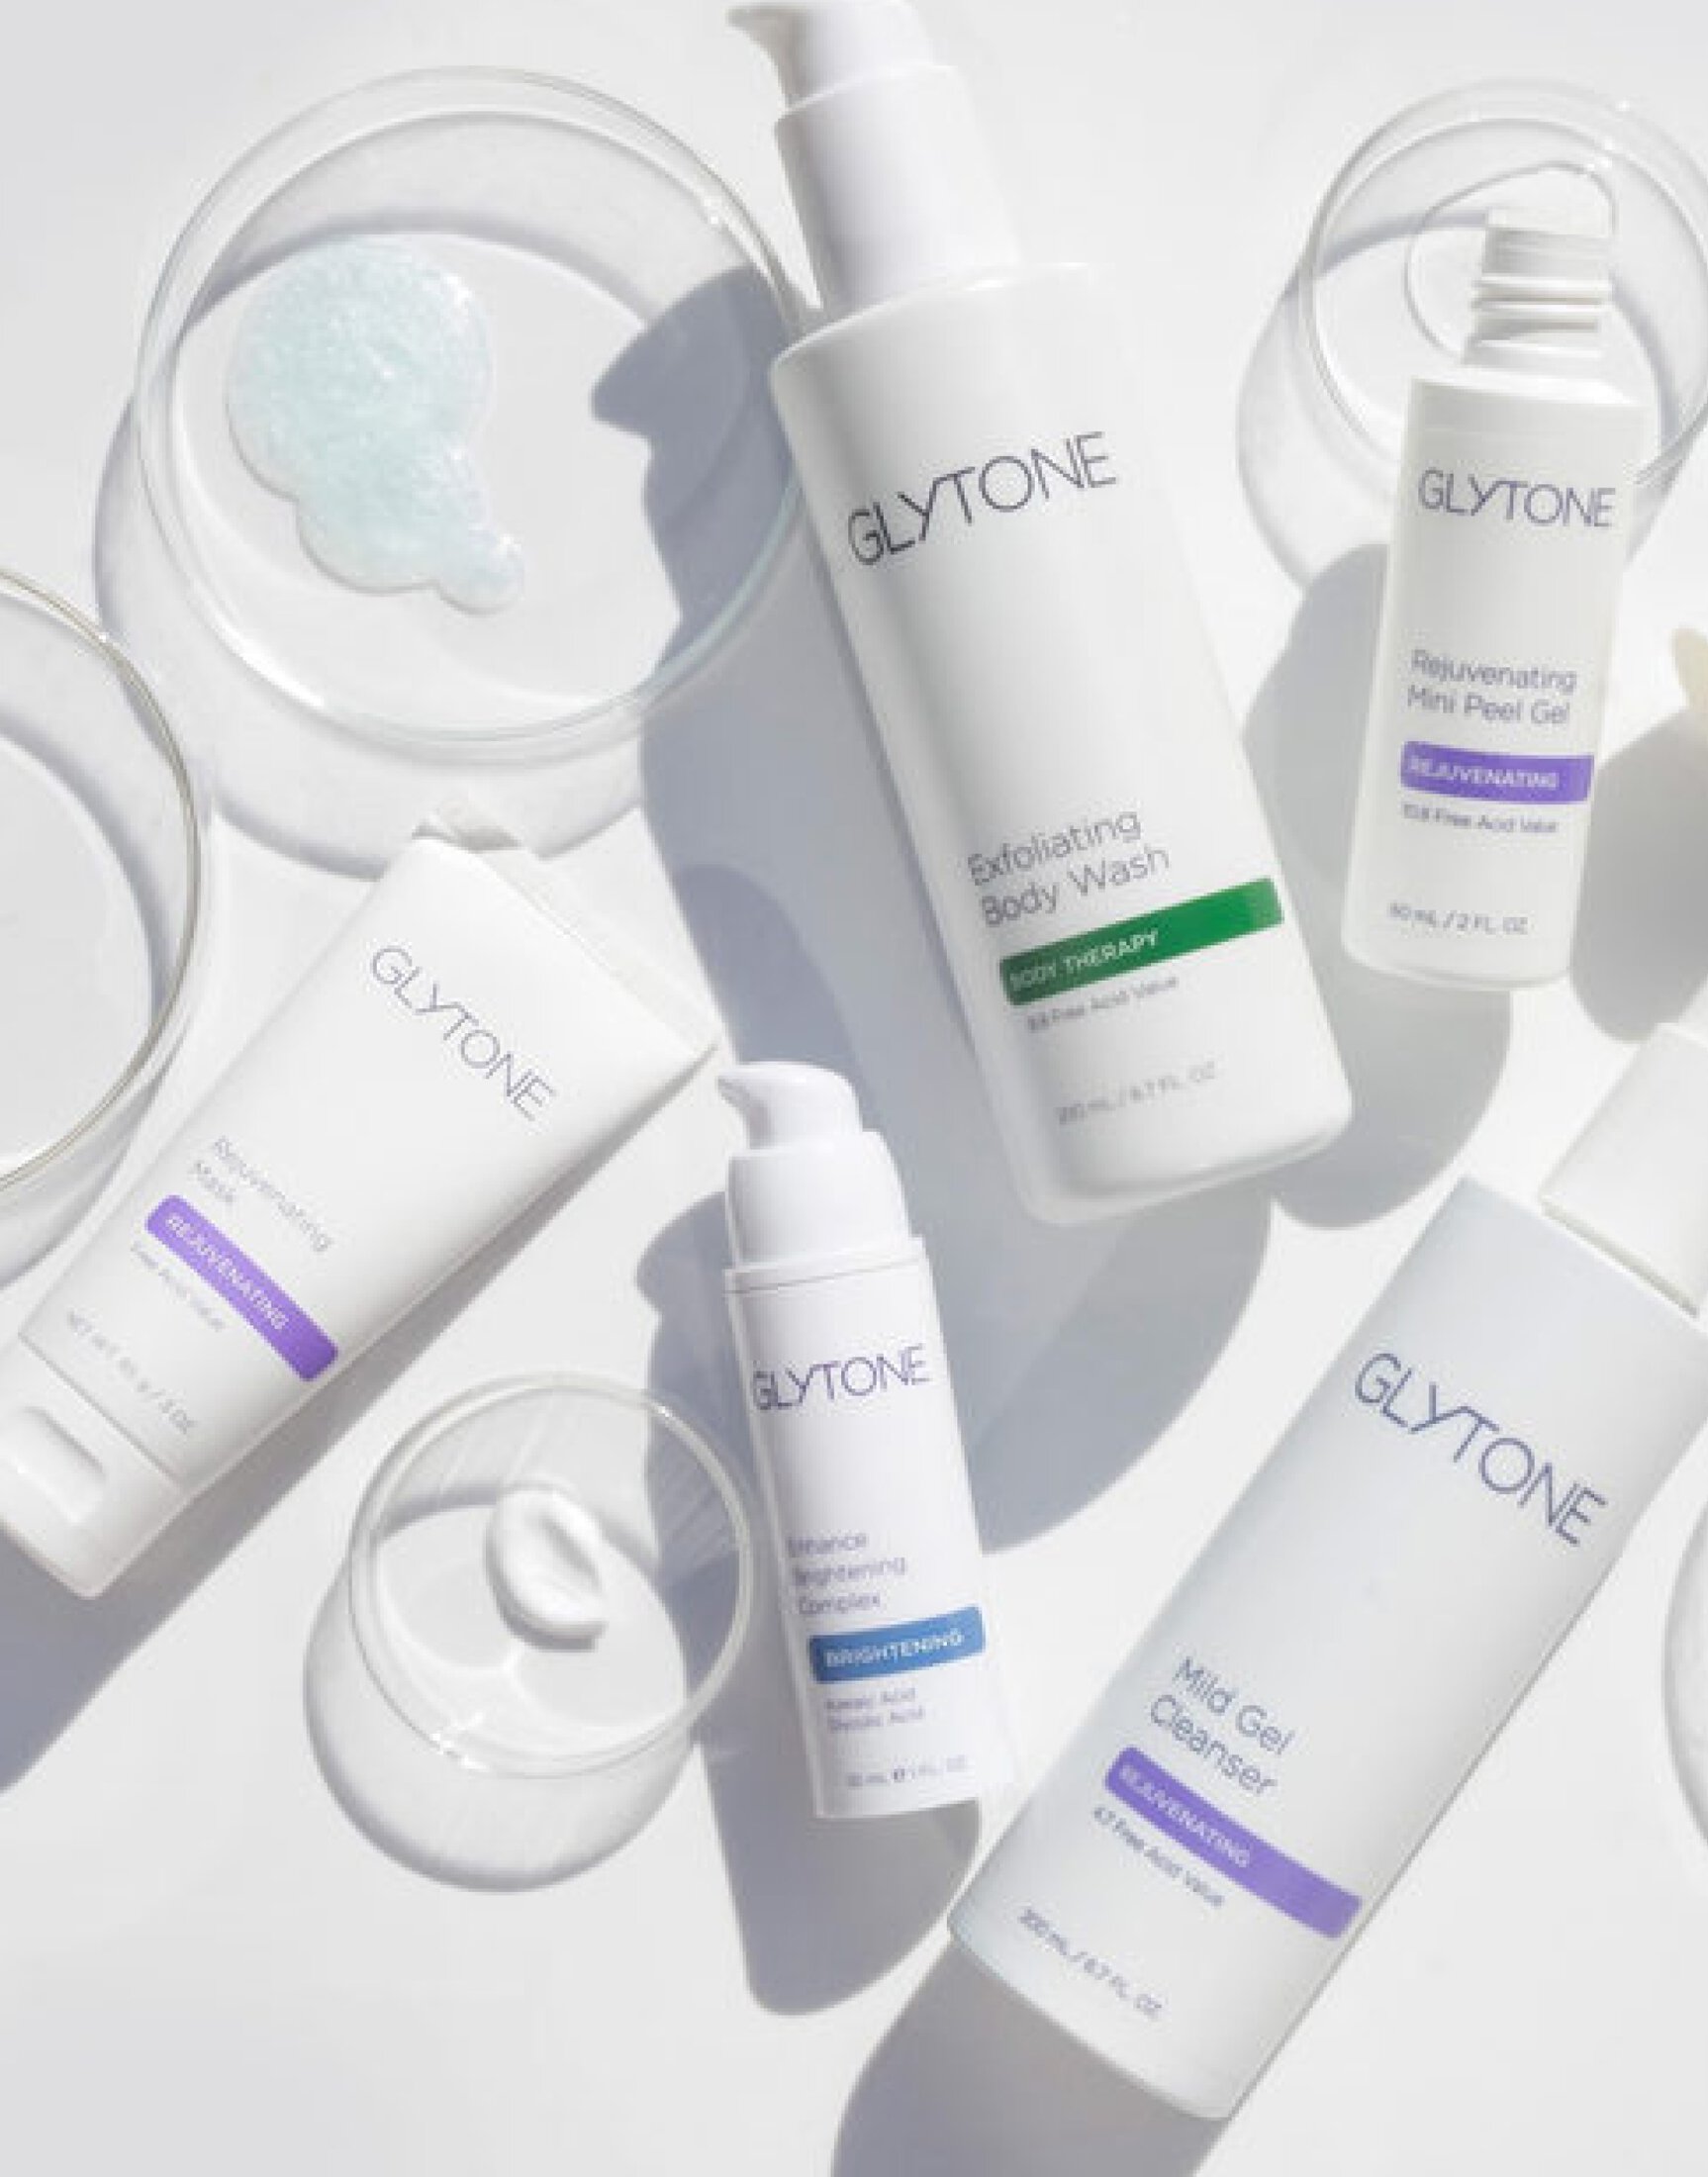 Glytone skincare products